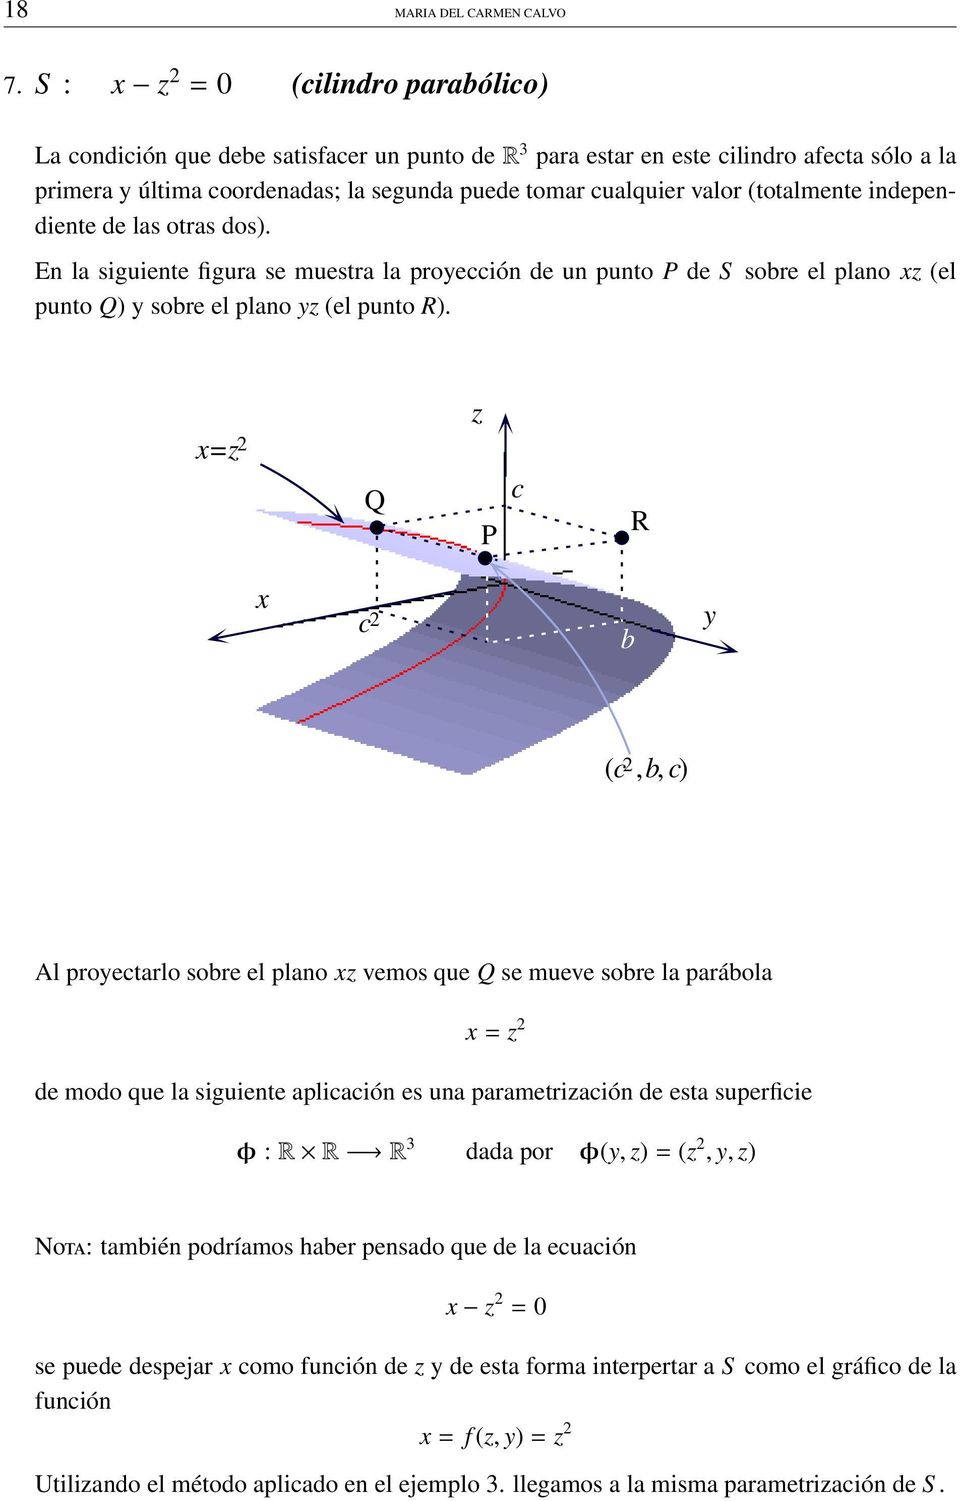 (totalmente independiente de las otras dos). En la siguiente figura se muestra la proección de un punto P de S sobre el plano (el punto Q) sobre el plano (el punto R).